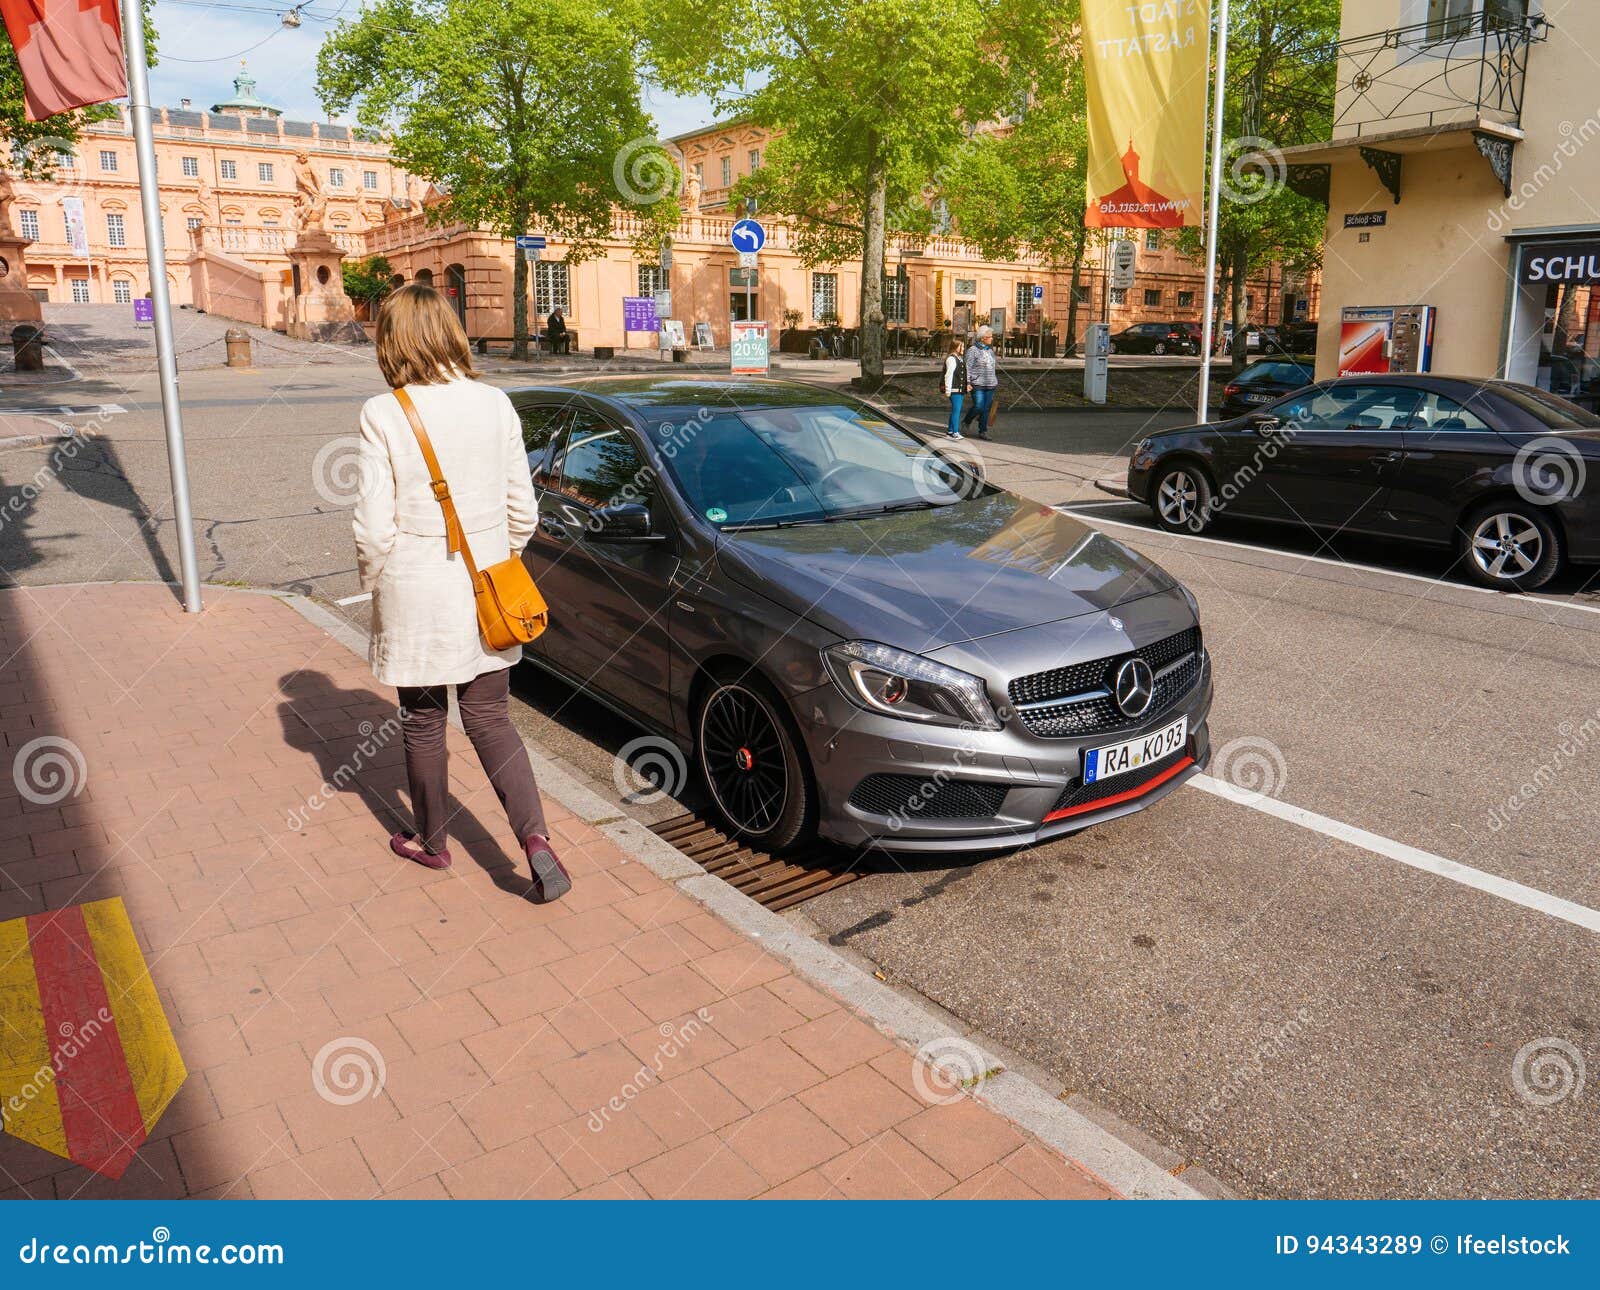 https://thumbs.dreamstime.com/z/mercedes-benz-class-car-parked-woman-walking-nearby-rastatt-germany-apr-german-near-new-generation-near-schloss-94343289.jpg